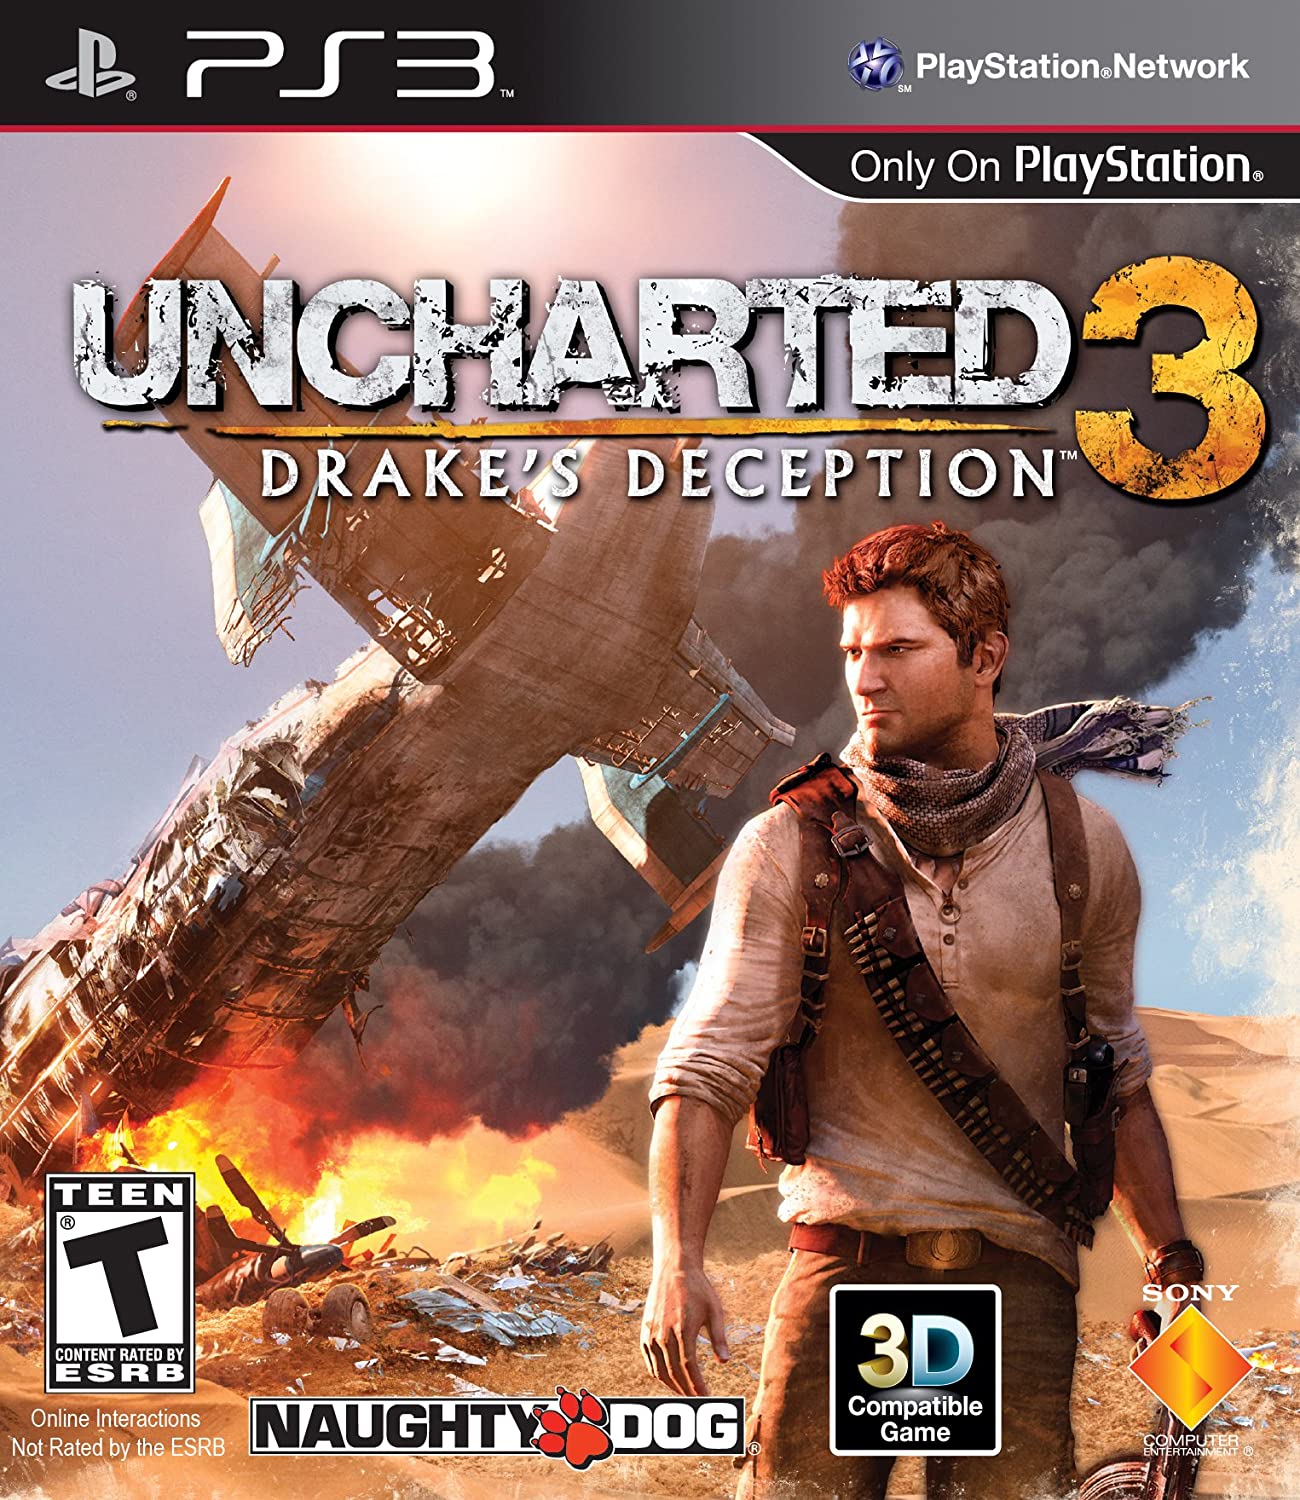 Dicas do troéu Neediest for Speediest do jogo Uncharted 3: Drake's